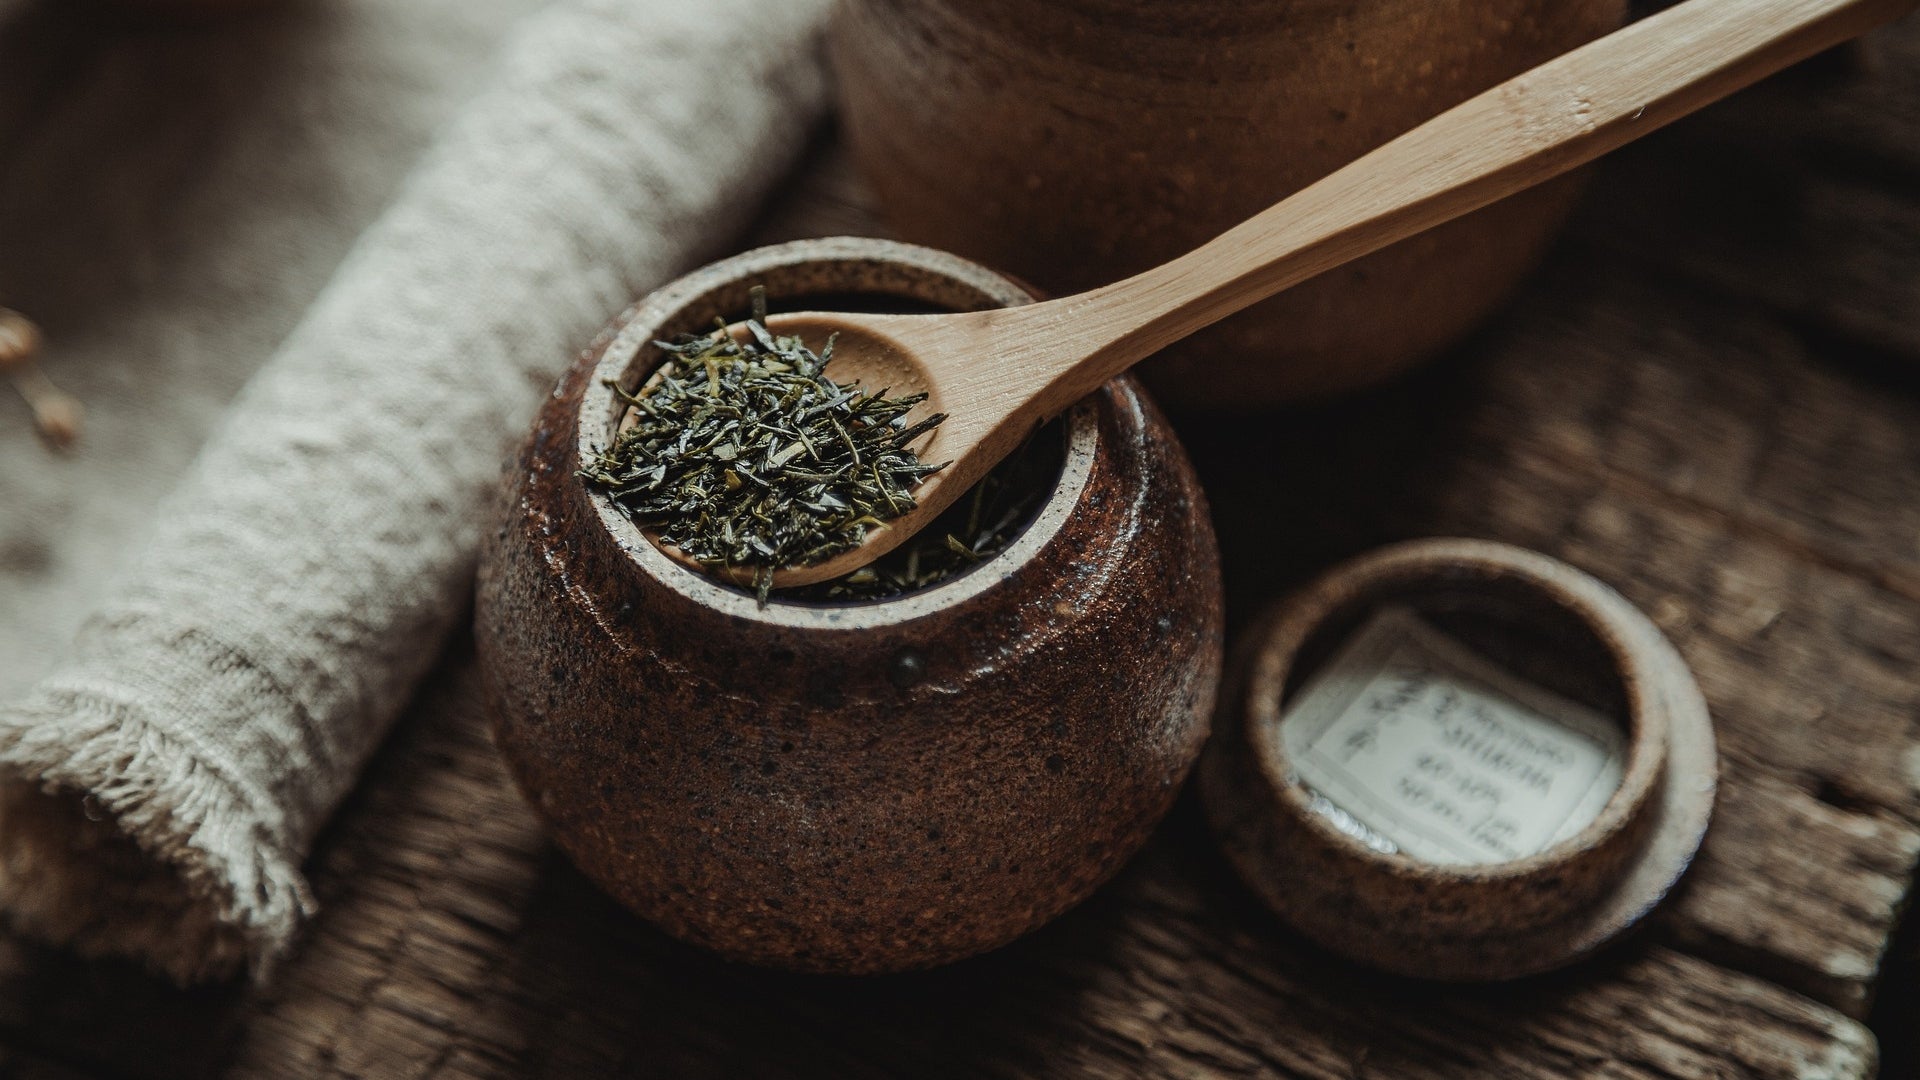 Foglie di tè sencha in un contenitore. I Benefici del Te Verde Sencha